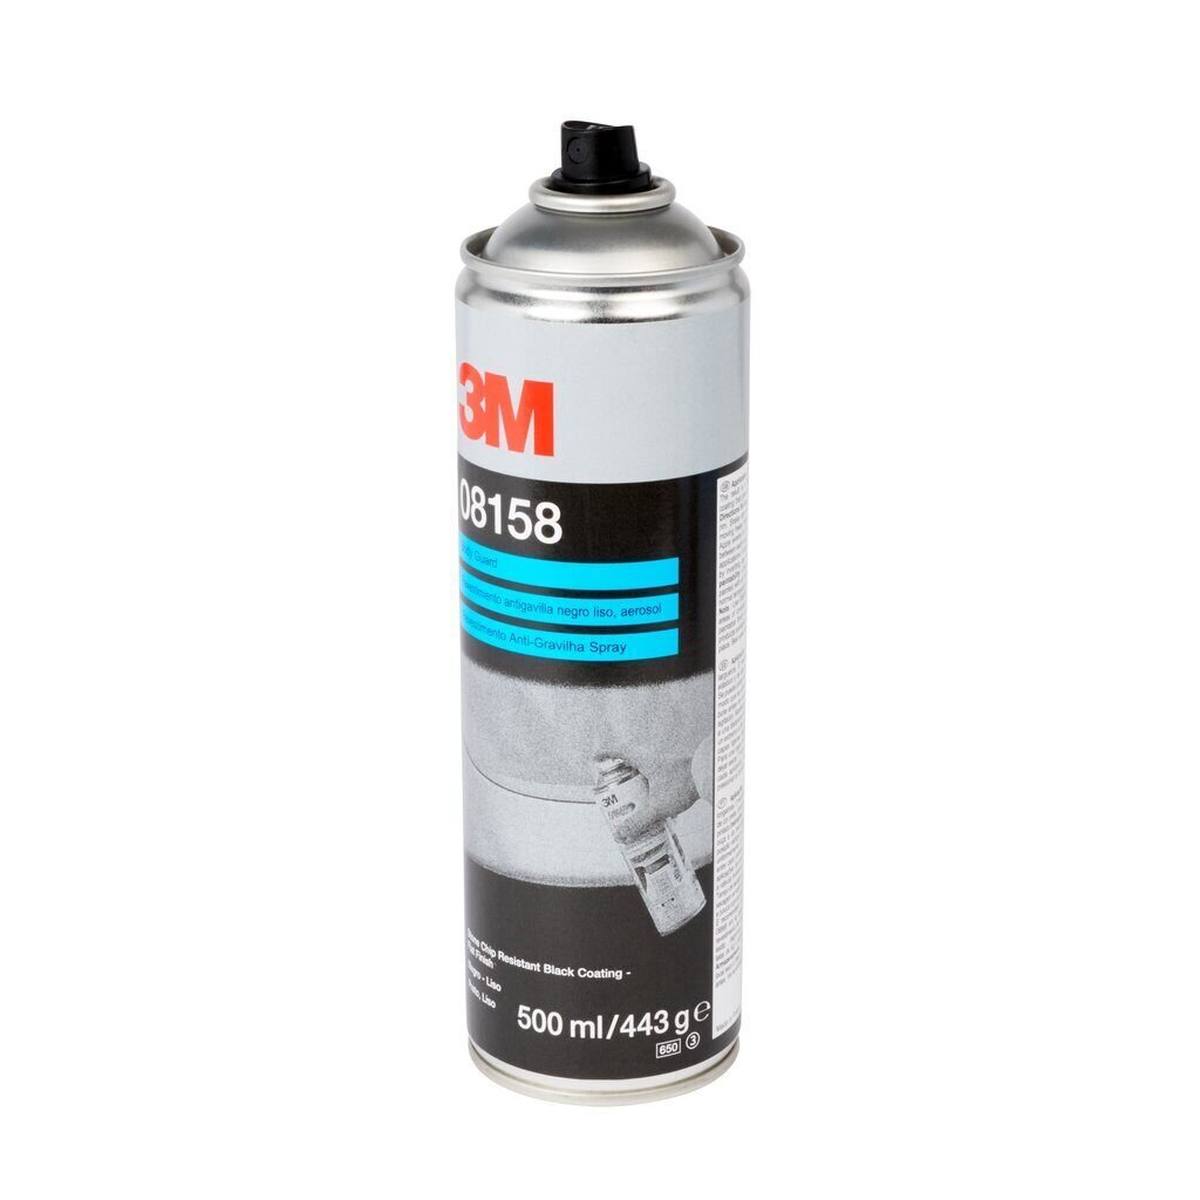 3M Spray anti-gravillons / à structure plate, noir, 500 ml #08158